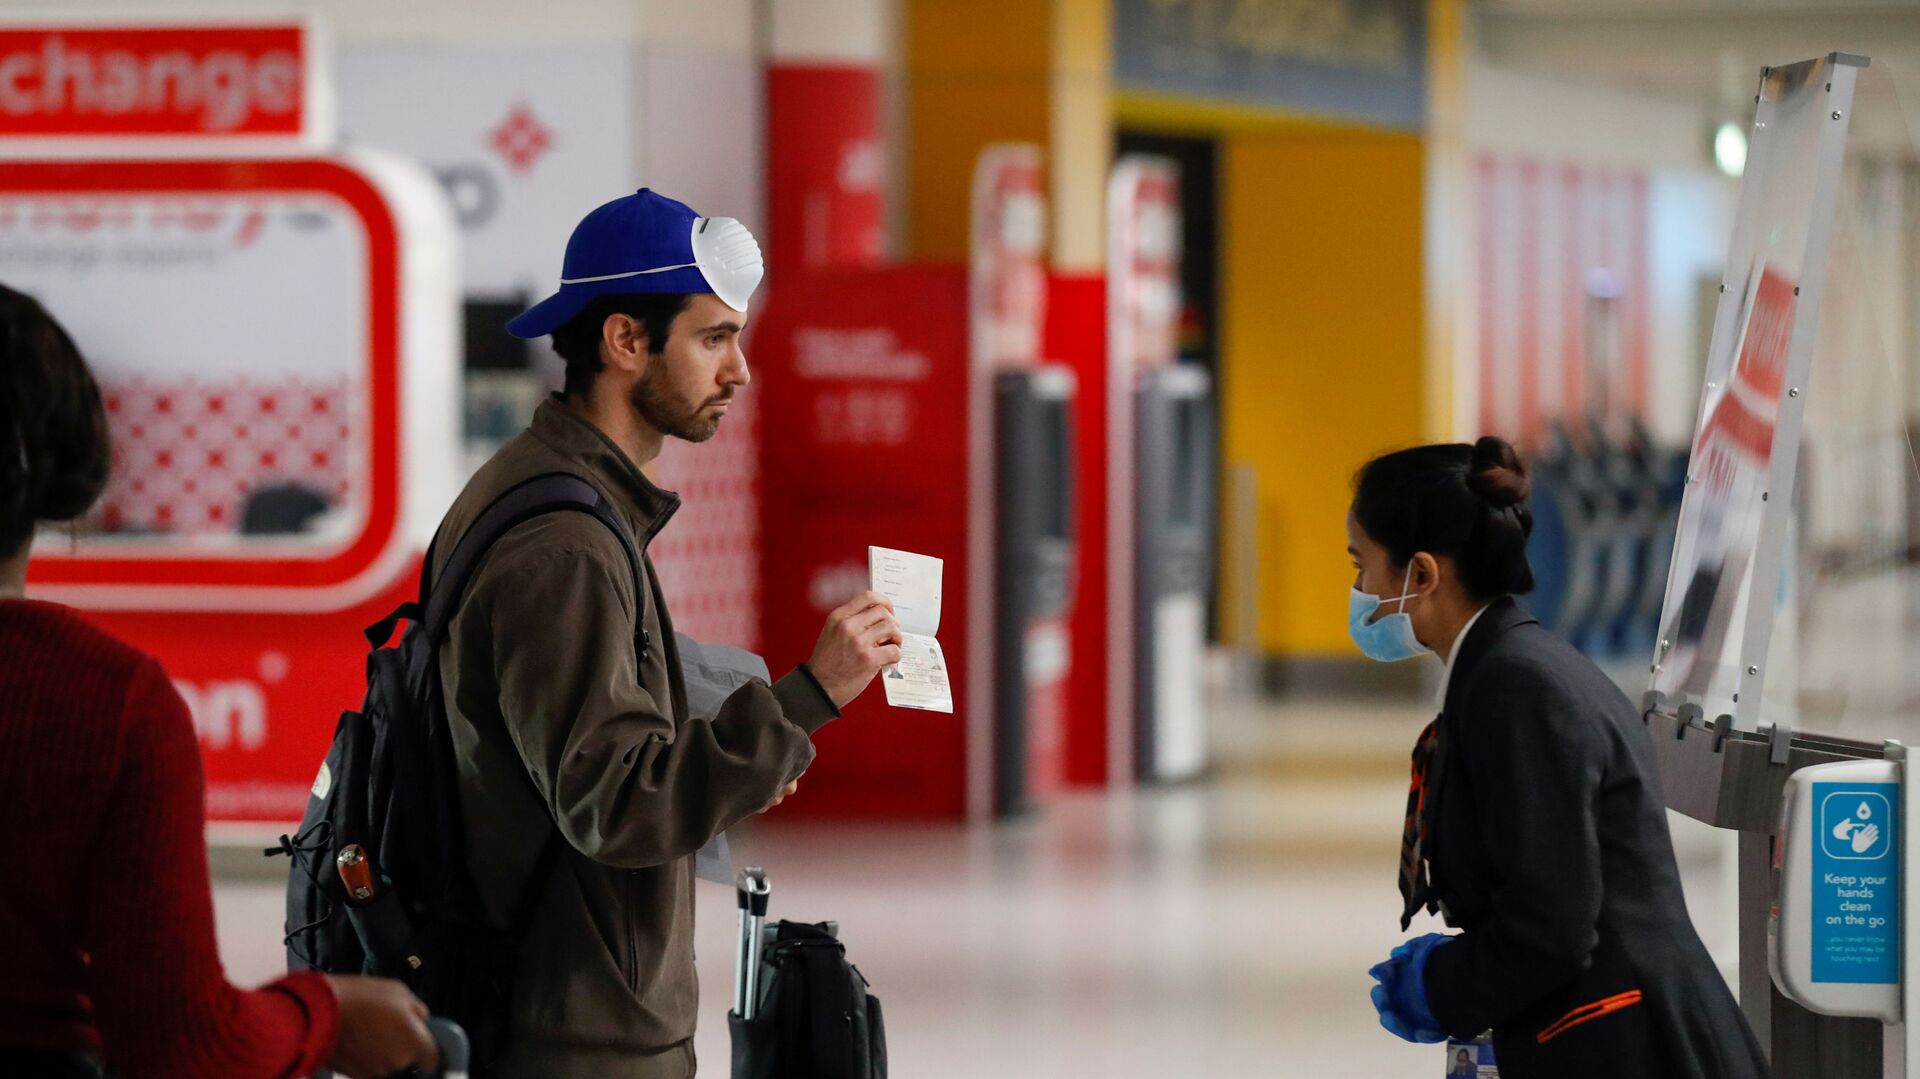 Пассажир предъявляет свой паспорт сотруднику в аэропорту Гатвик, Великобритания - Sputnik Таджикистан, 1920, 31.03.2021